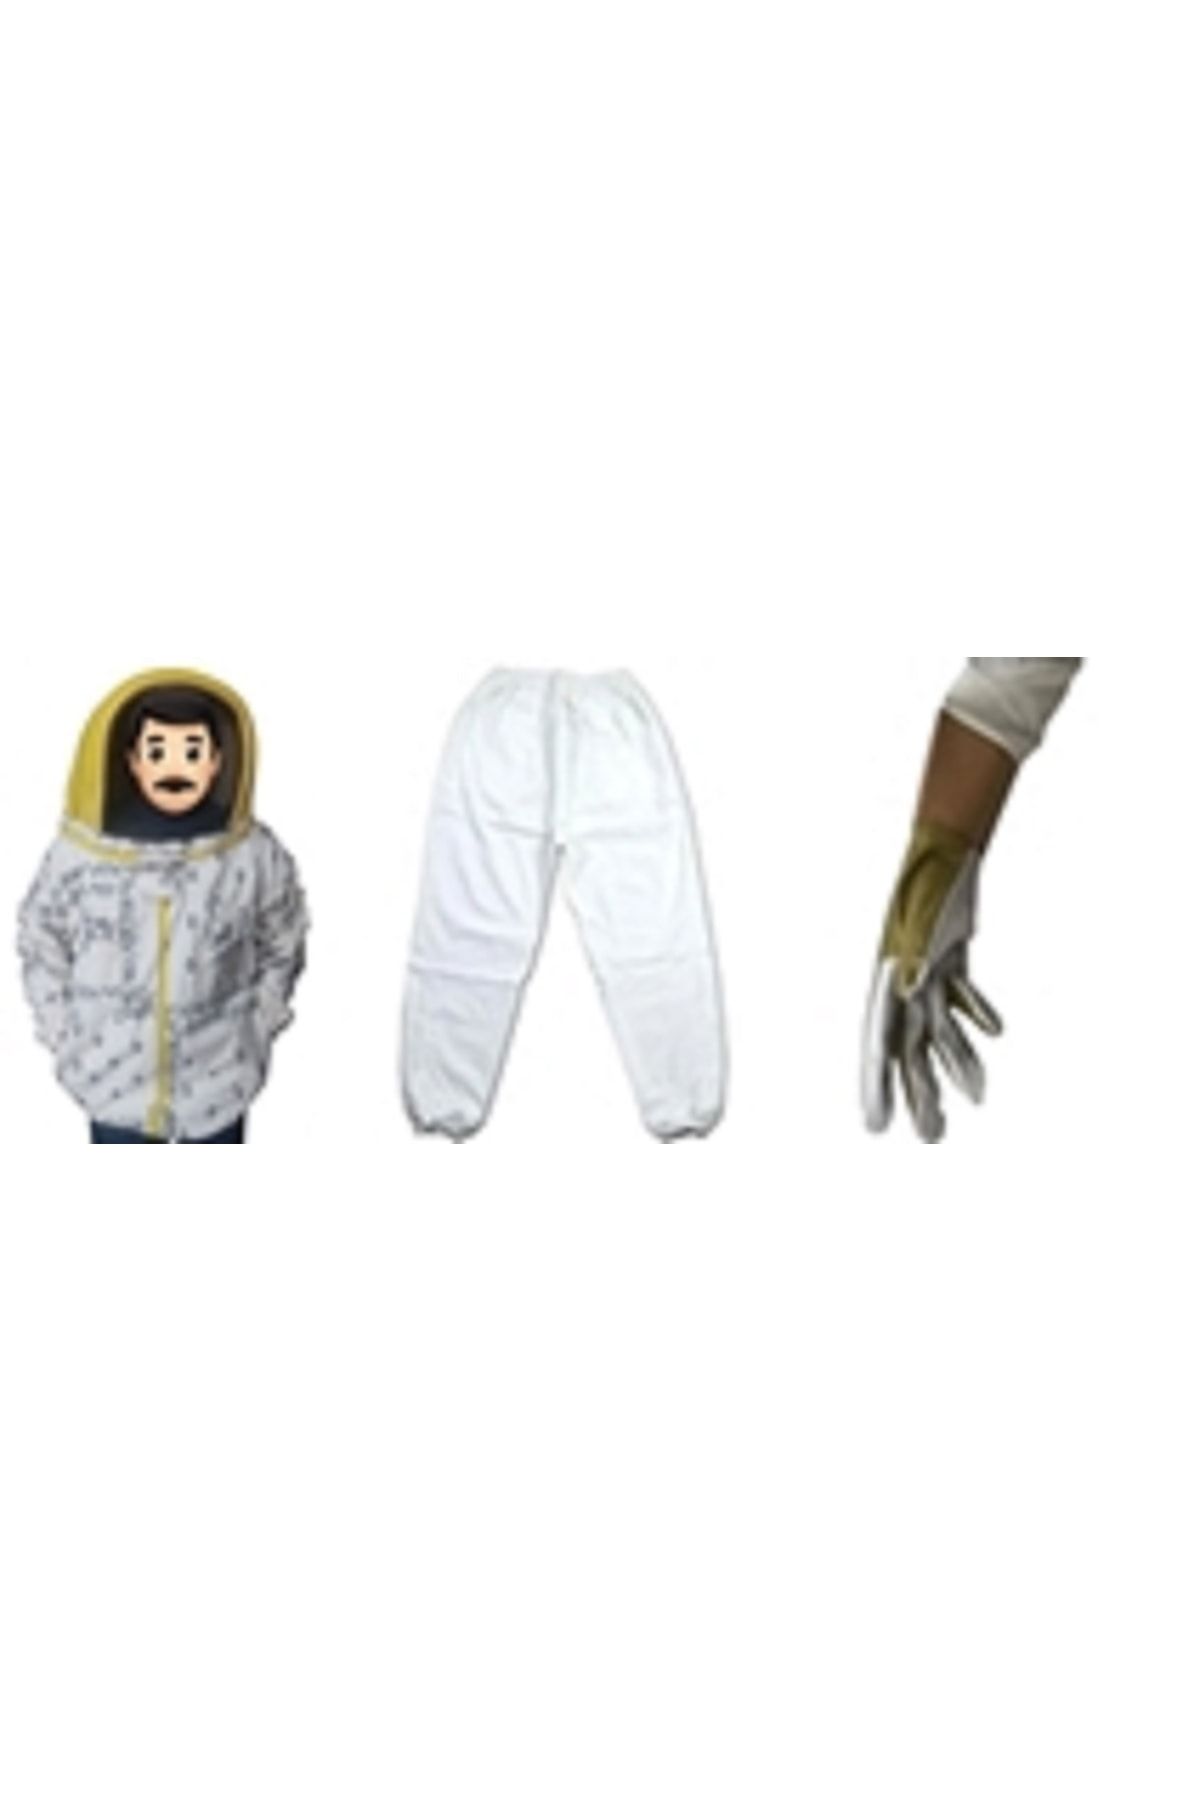 Ak Arıcılık Maske Seti ( Astronot Maske,pantolon,eldiven )